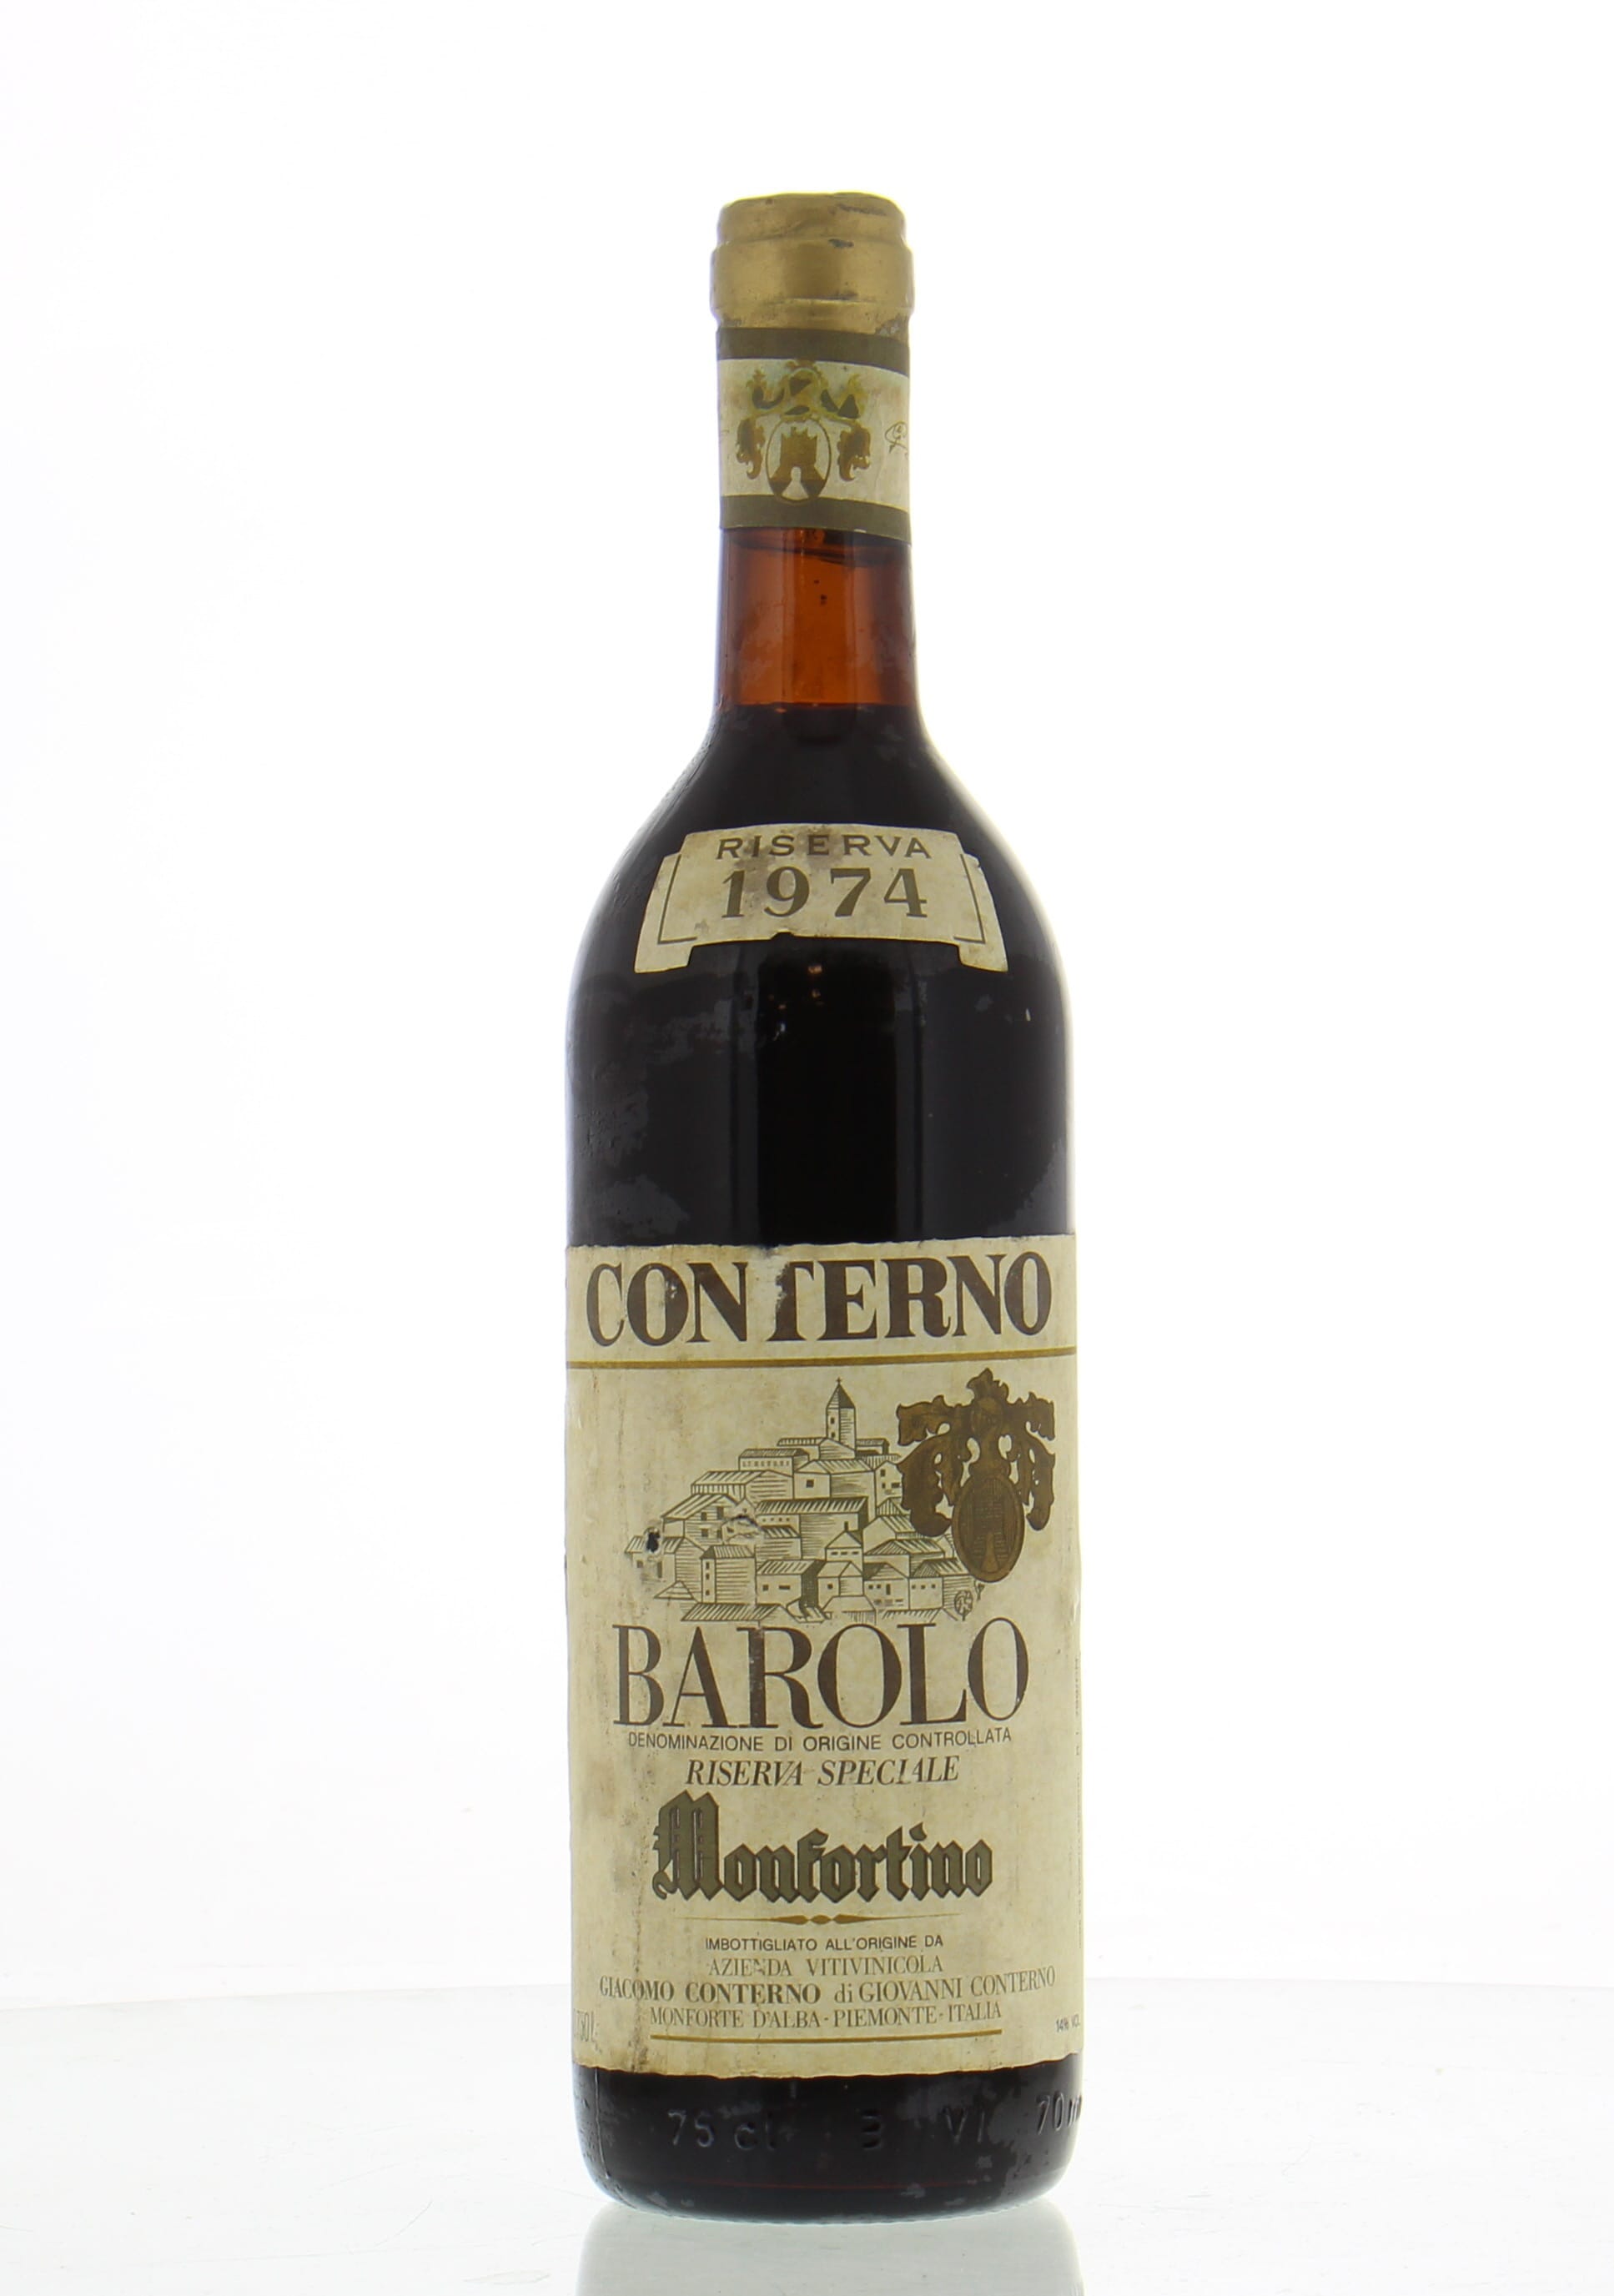 Giacomo Conterno - Barolo Riserva Monfortino 1974 Perfect